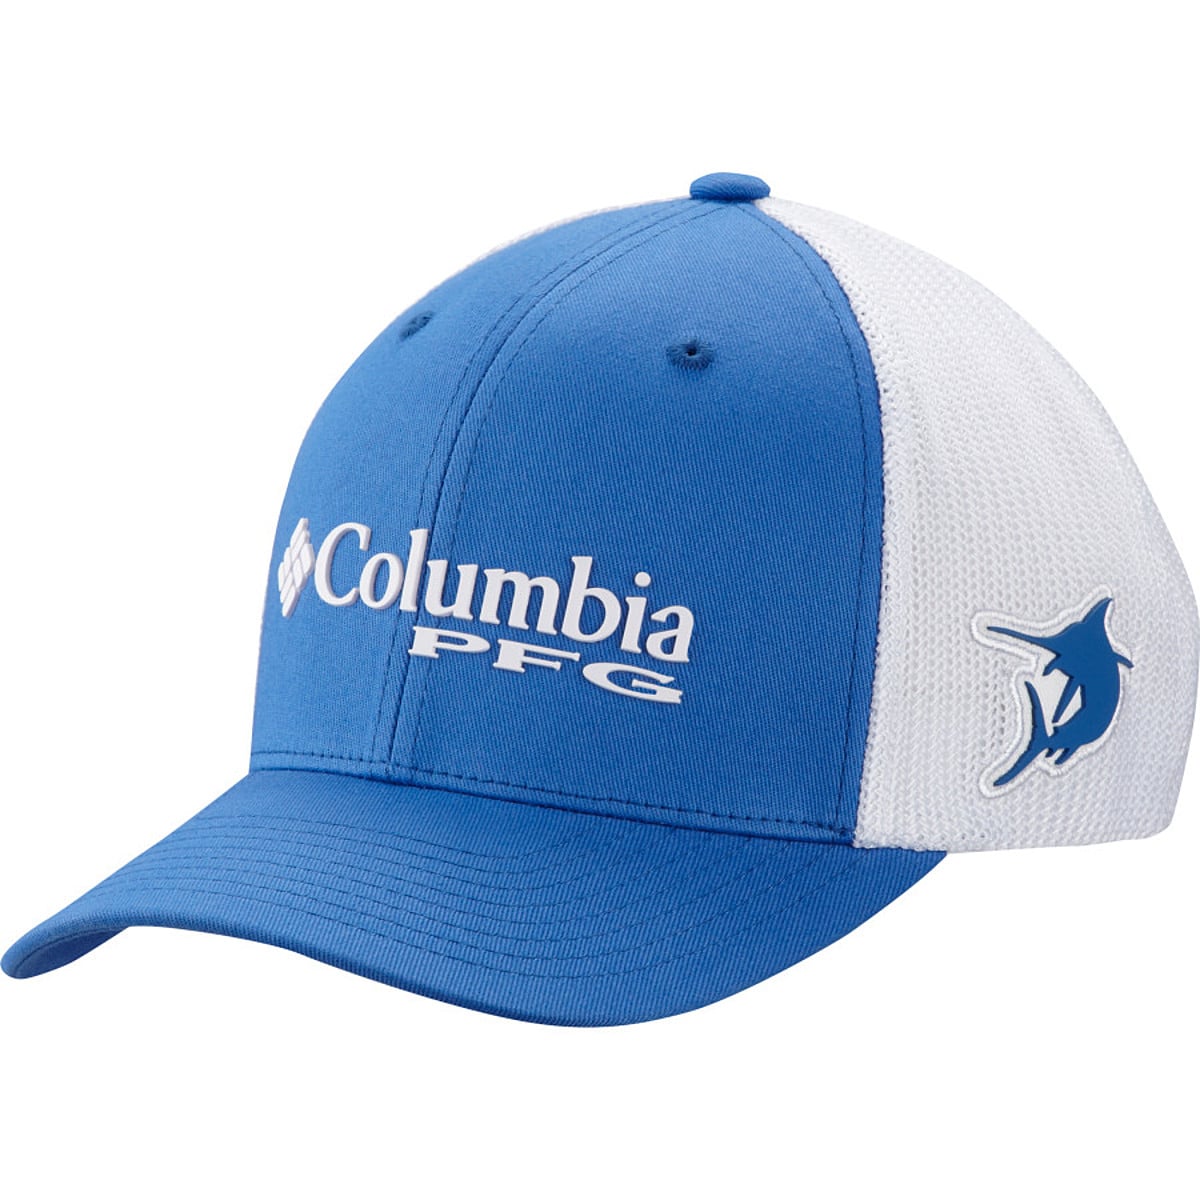 Columbia Men's Hats